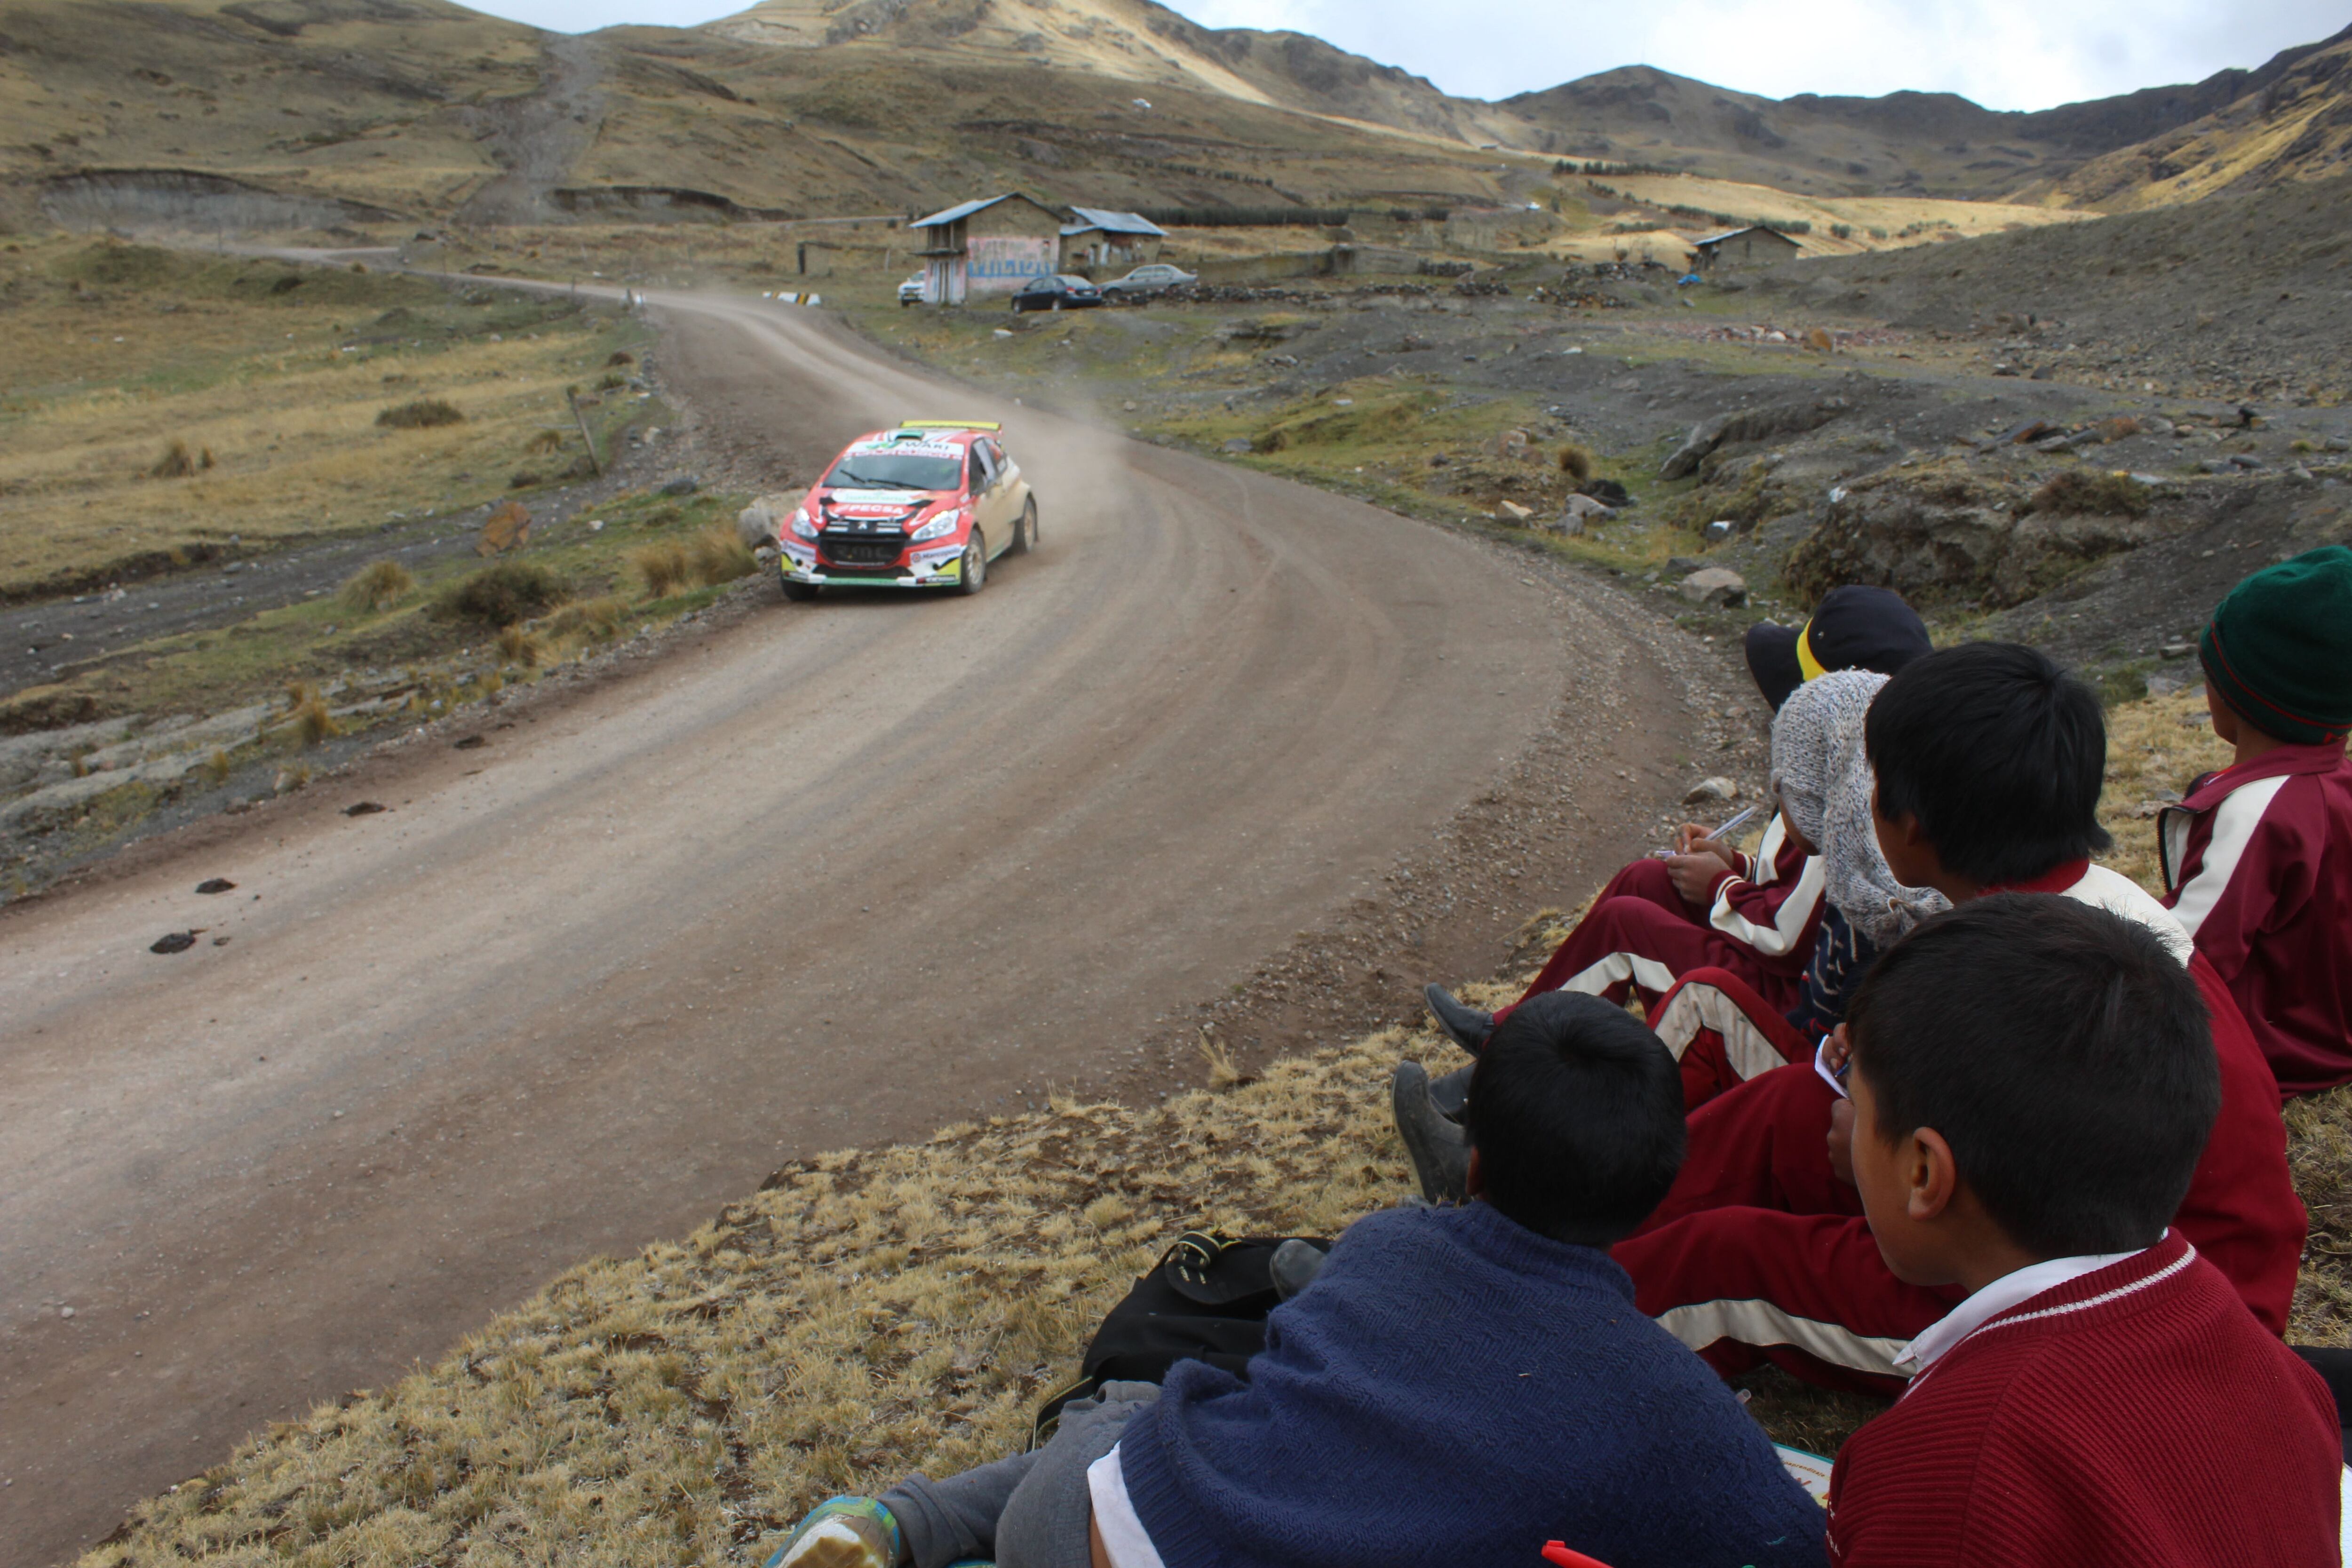 Richard Palomino en carrera en la etapa entre Huancayo y Ayacucho. (Foto: Christian Cruz Valdivia)